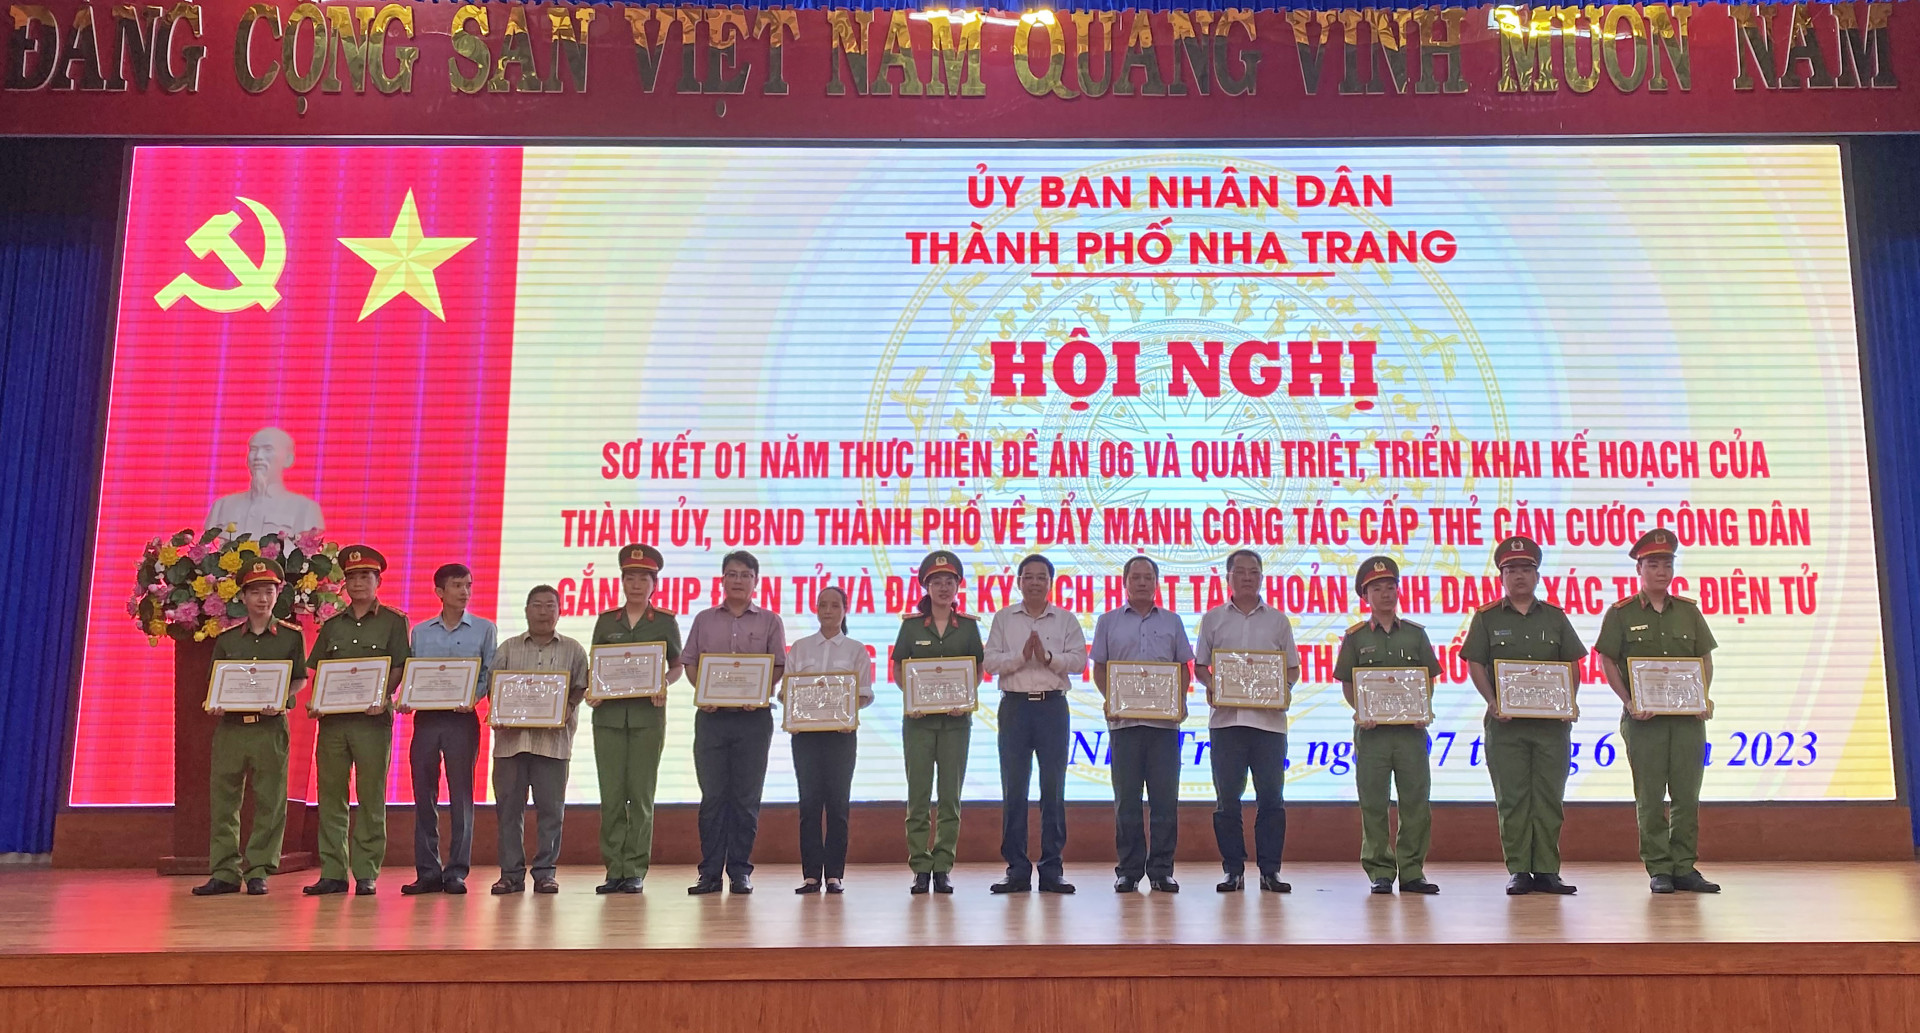 Đồng chí Nguyễn Sỹ Khánh - Phó Bí thư Thành ủy, Chủ tịch UBND thành phố trao giấy khen cho các cá nhân.